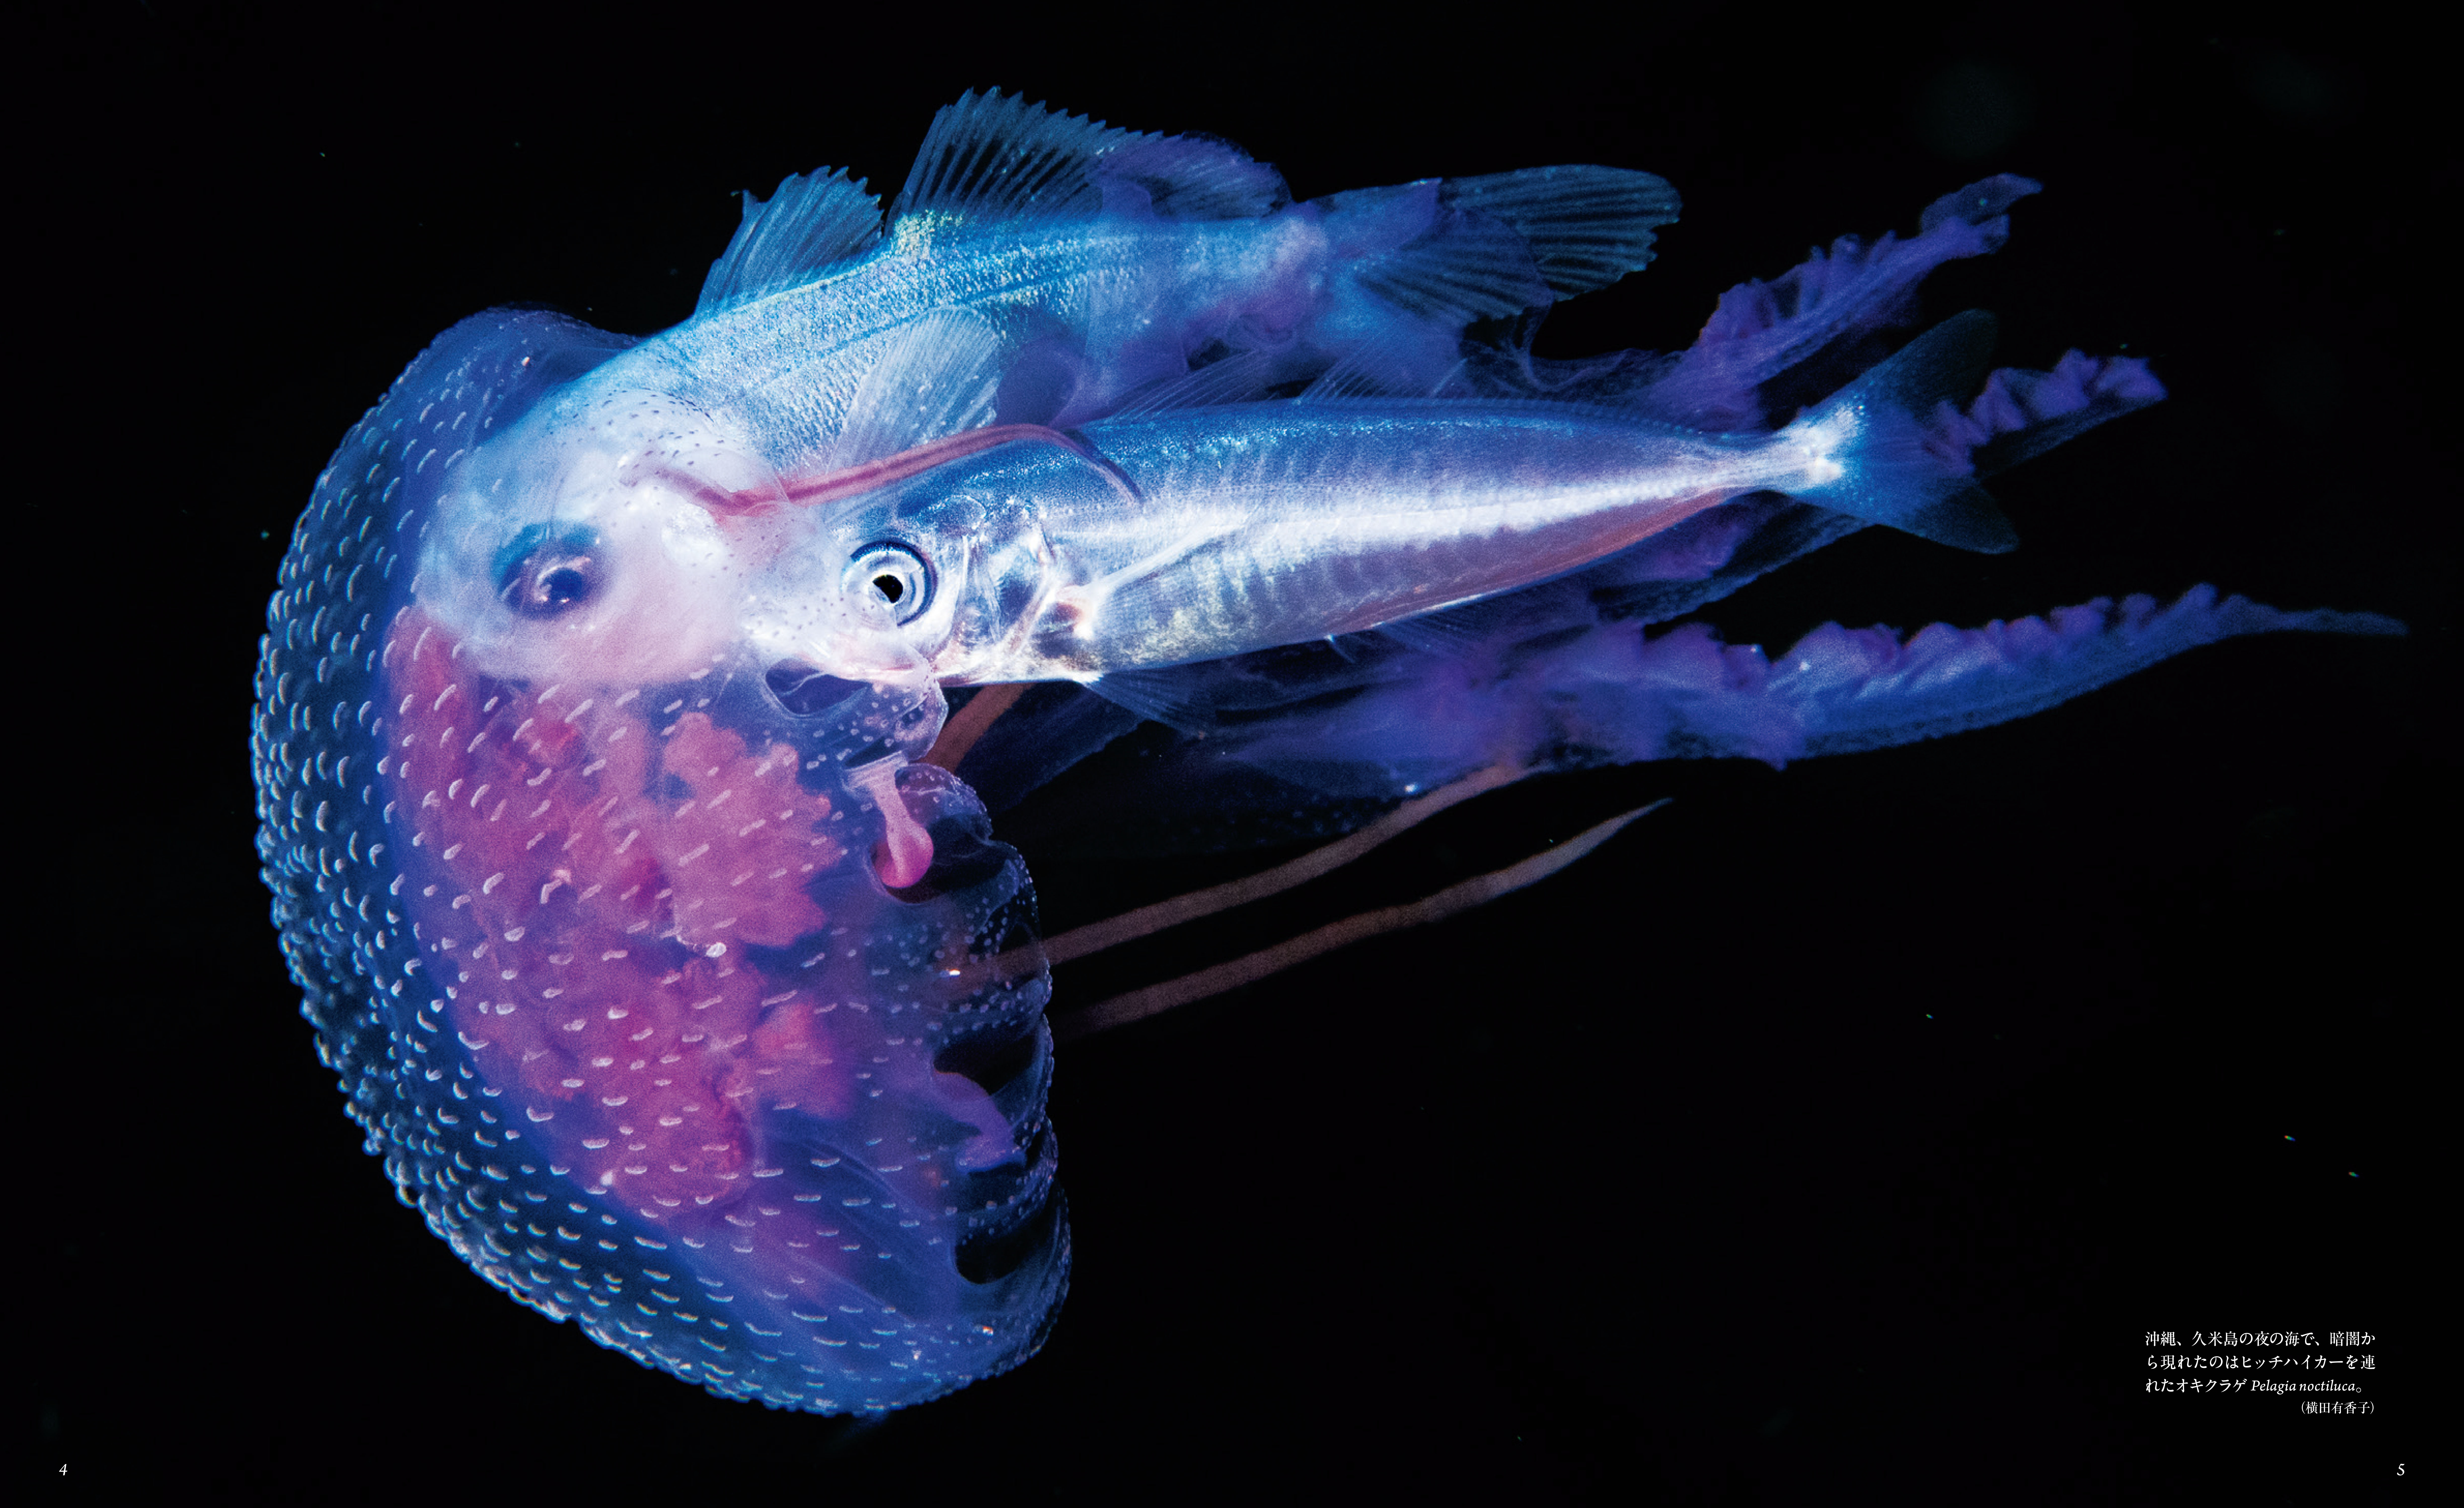 世界の海中で撮影された美しく 神秘的なクラゲの写真を300点近く大判の写真で掲載 Presswalker